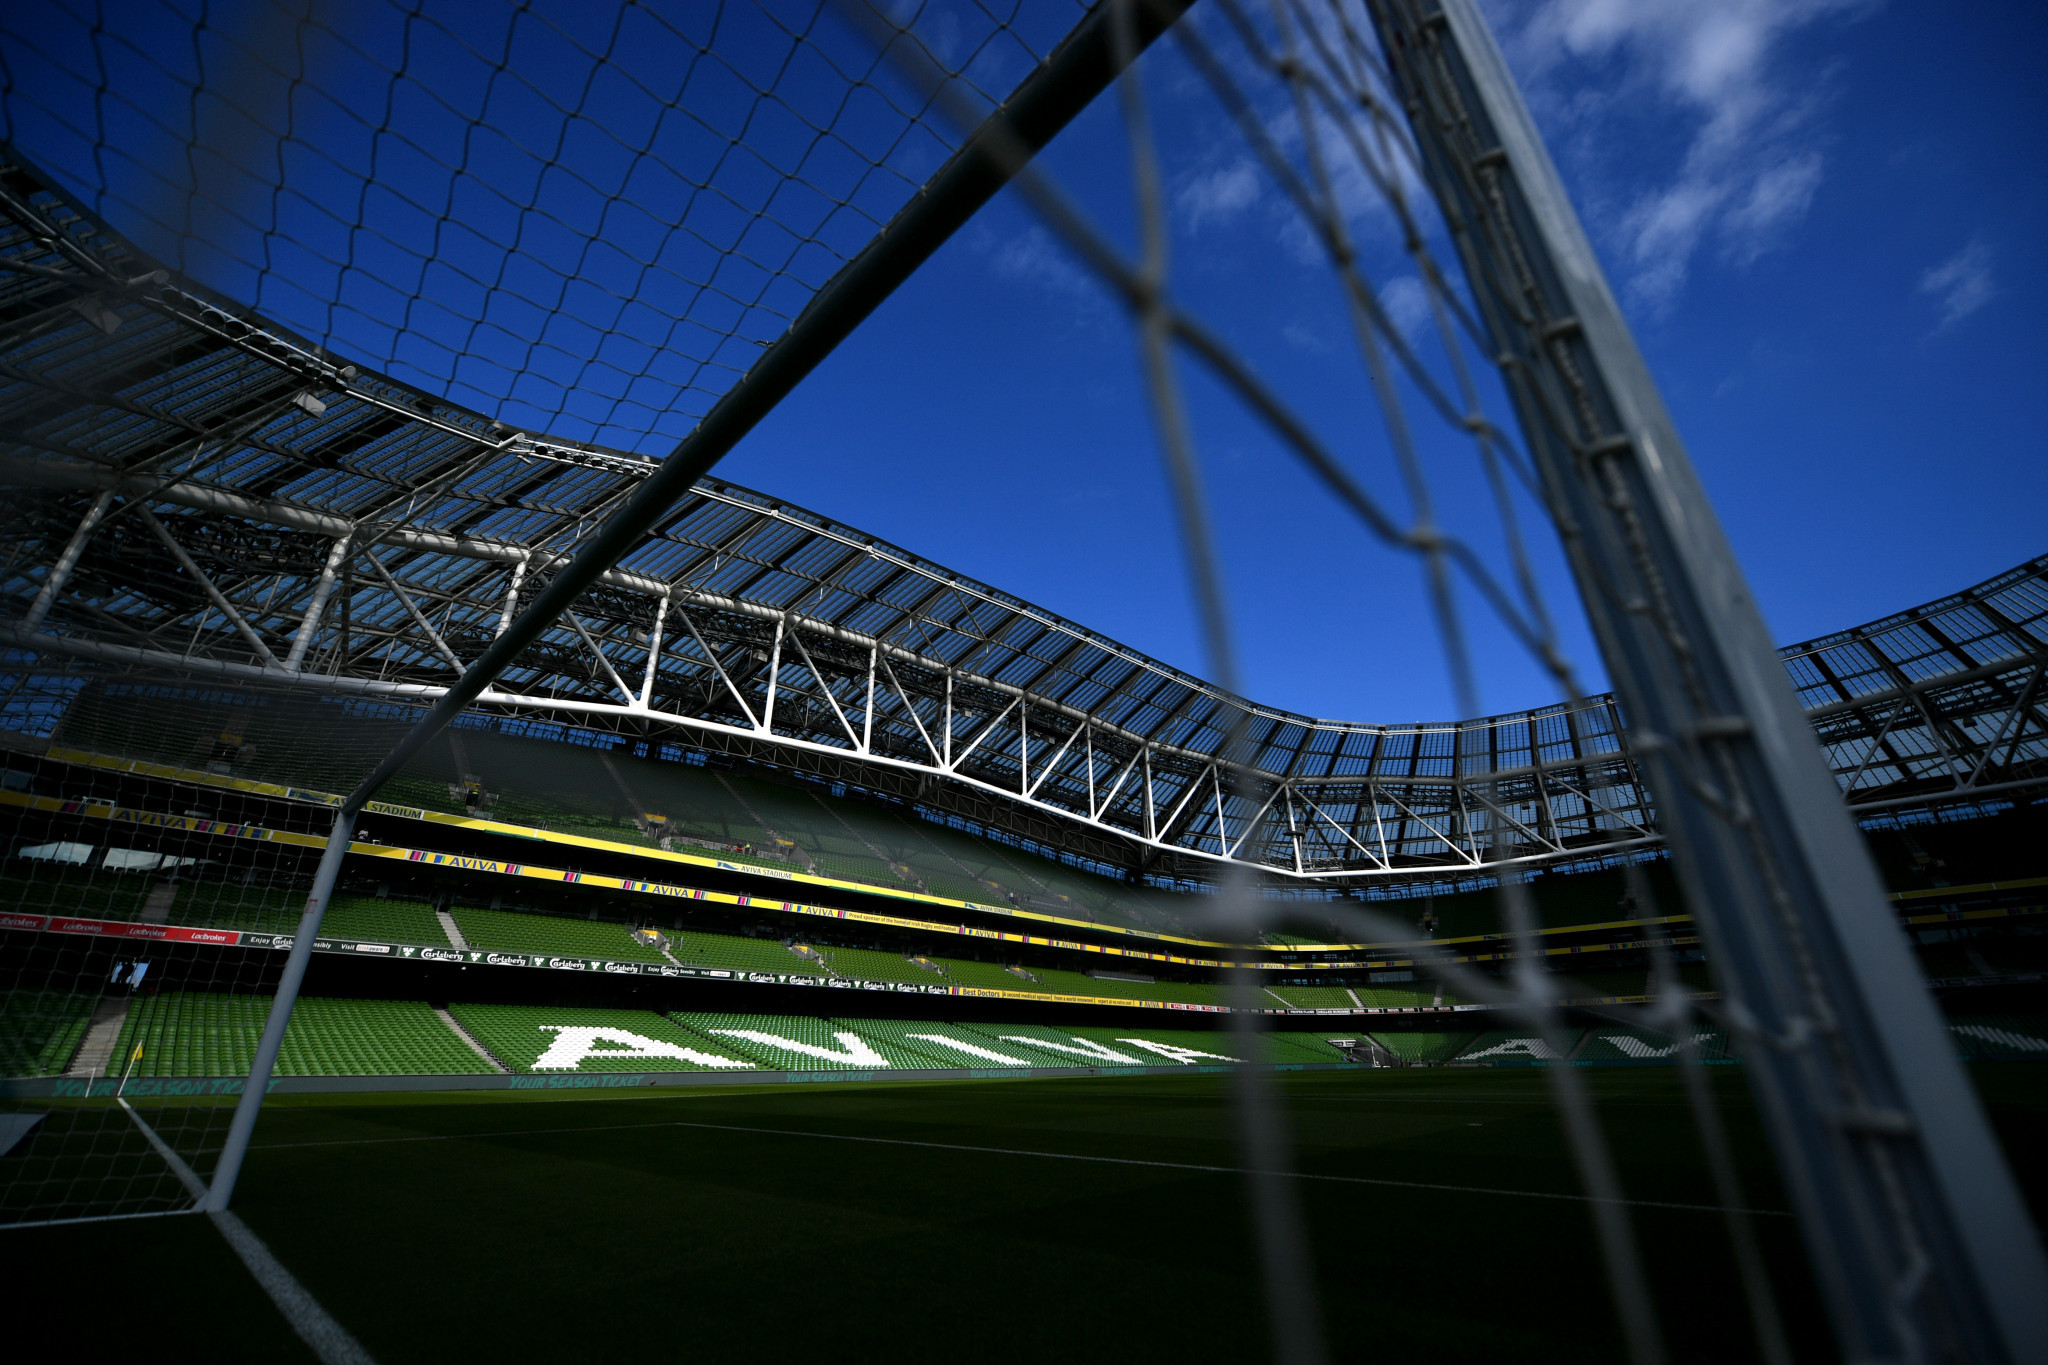 UEFA gives Dublin, Bilbao, Rome and Munich extra time to seek Euro 2020 fan guarantees